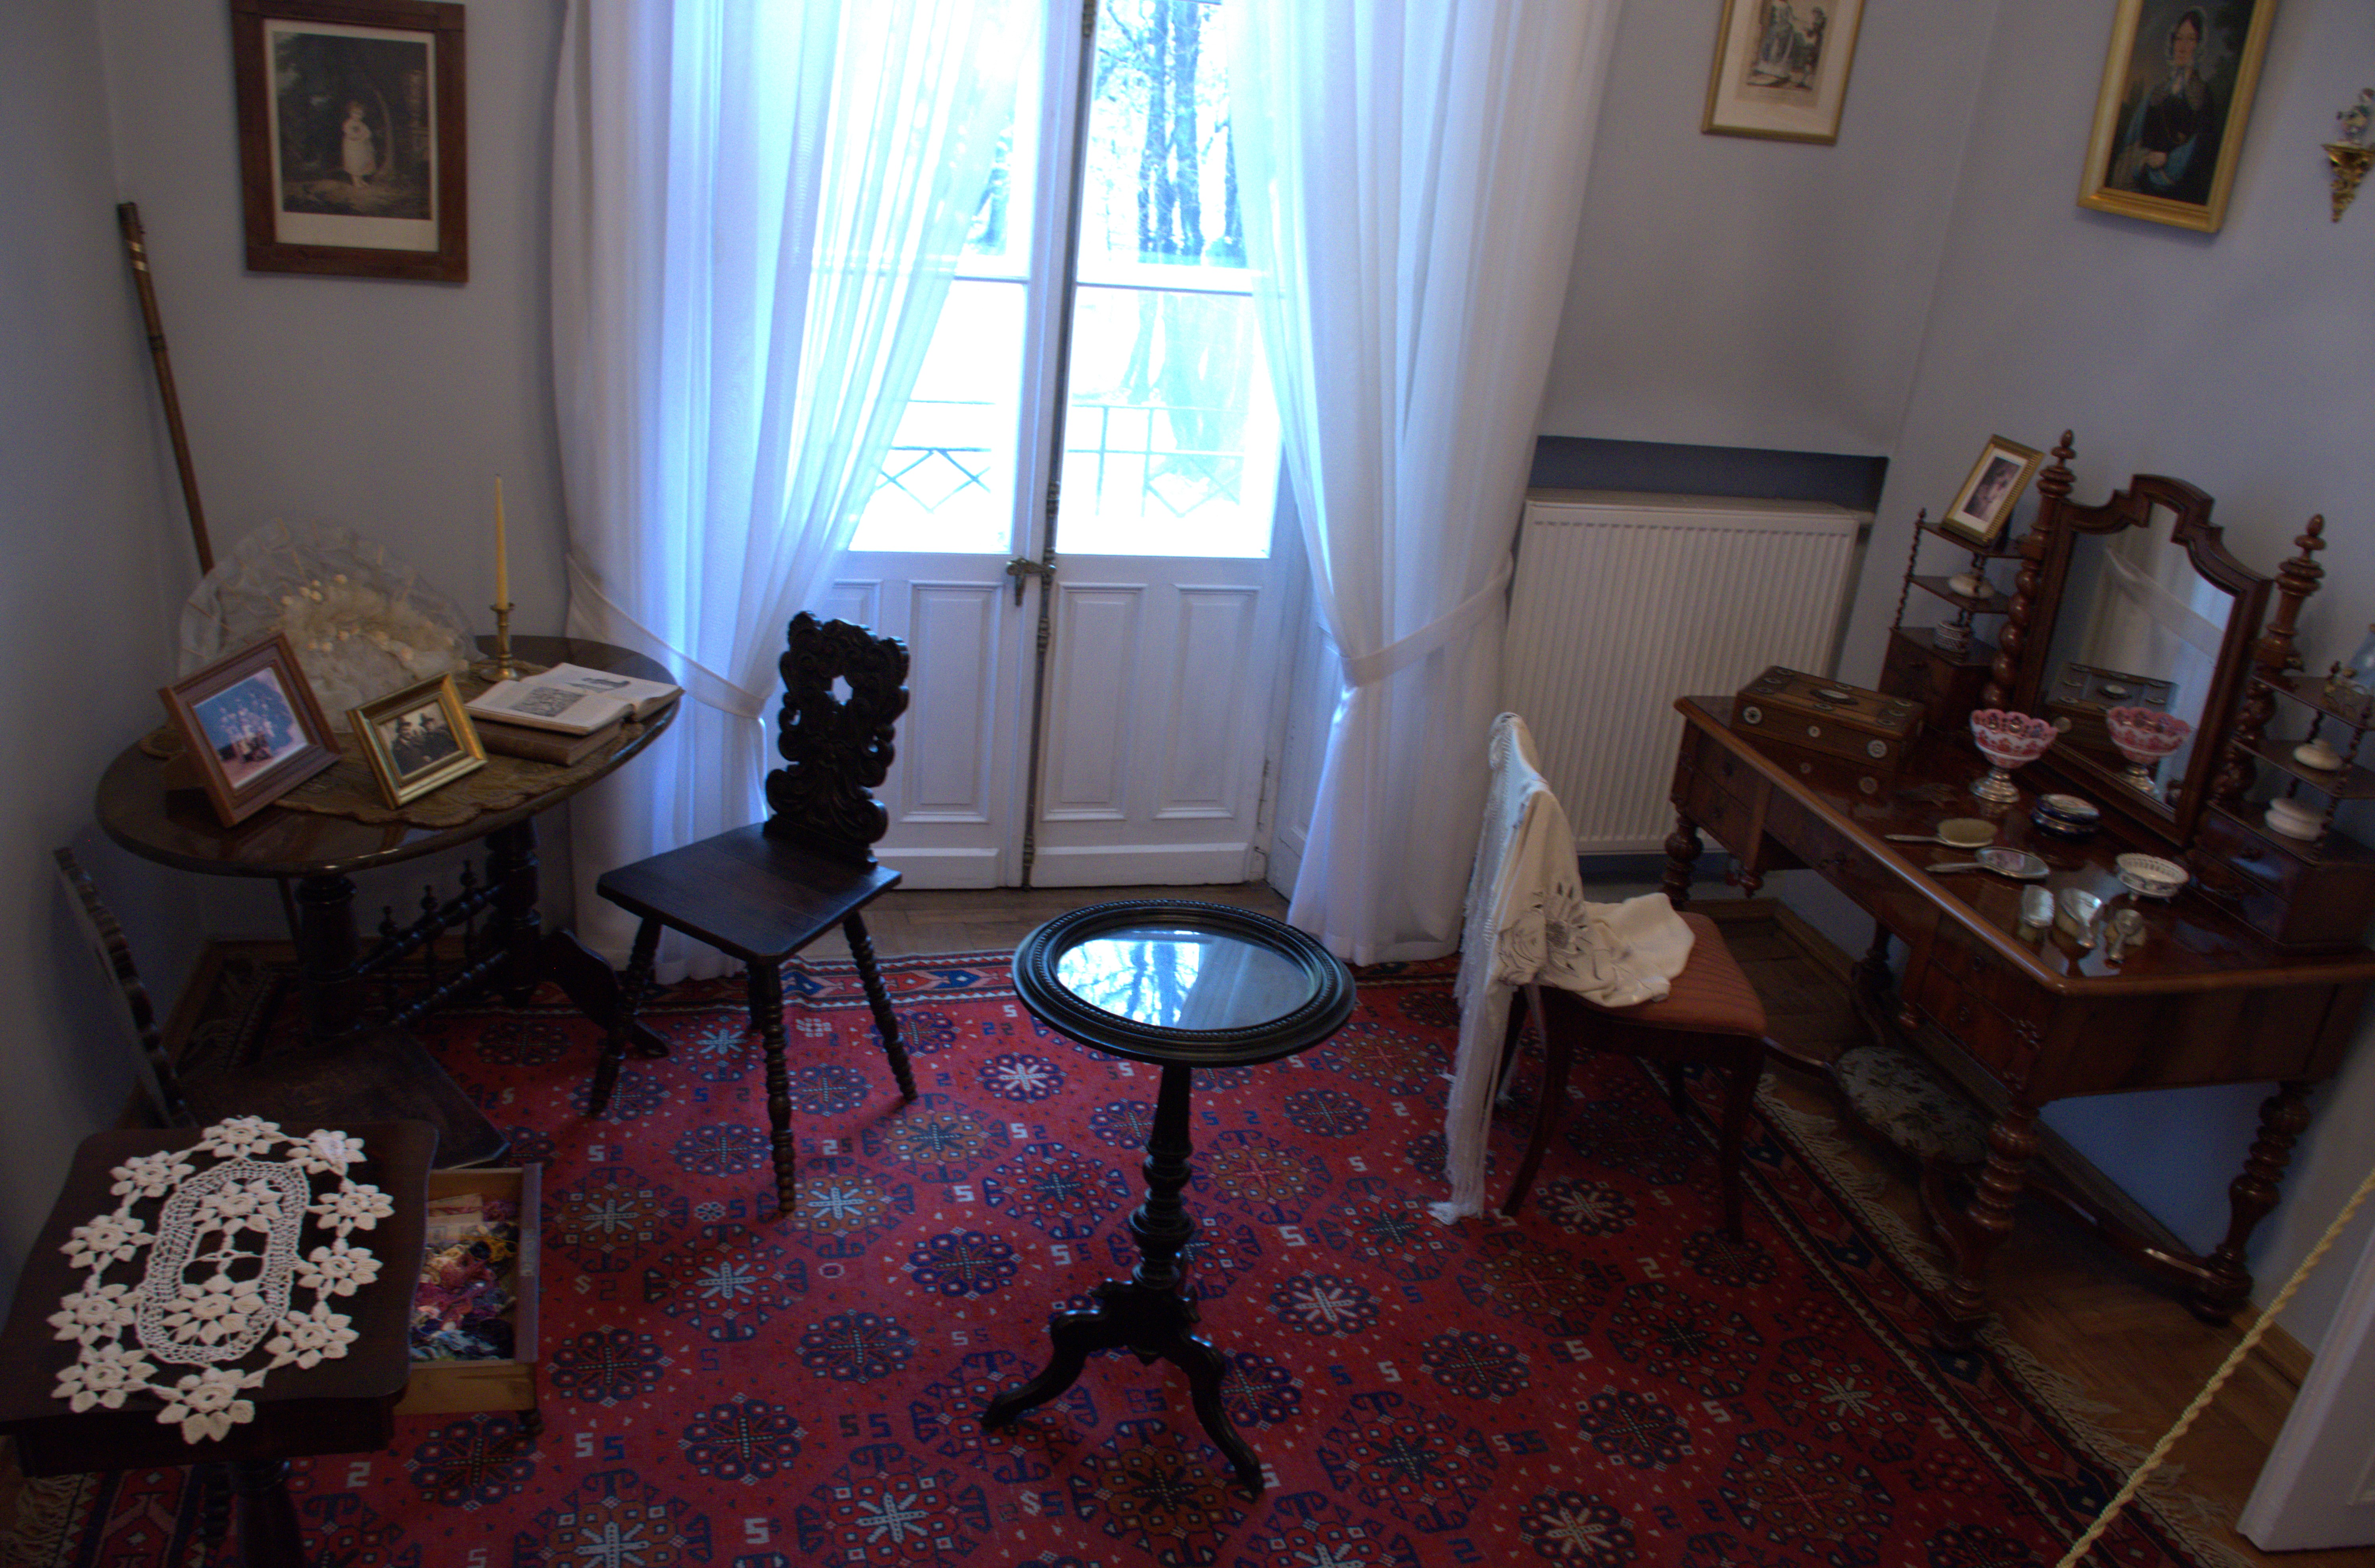 20 listopada - nasza wycieczka do Przeworska i Rzeszowa  | Przykładowy pokój z dawnej epoki. W kącie owalny stolik i drewniane krzesło, na środku okrągły stolik kawowy, po prawej drewniana toaletka z krzesłem. Na podłodze dywan..jpg